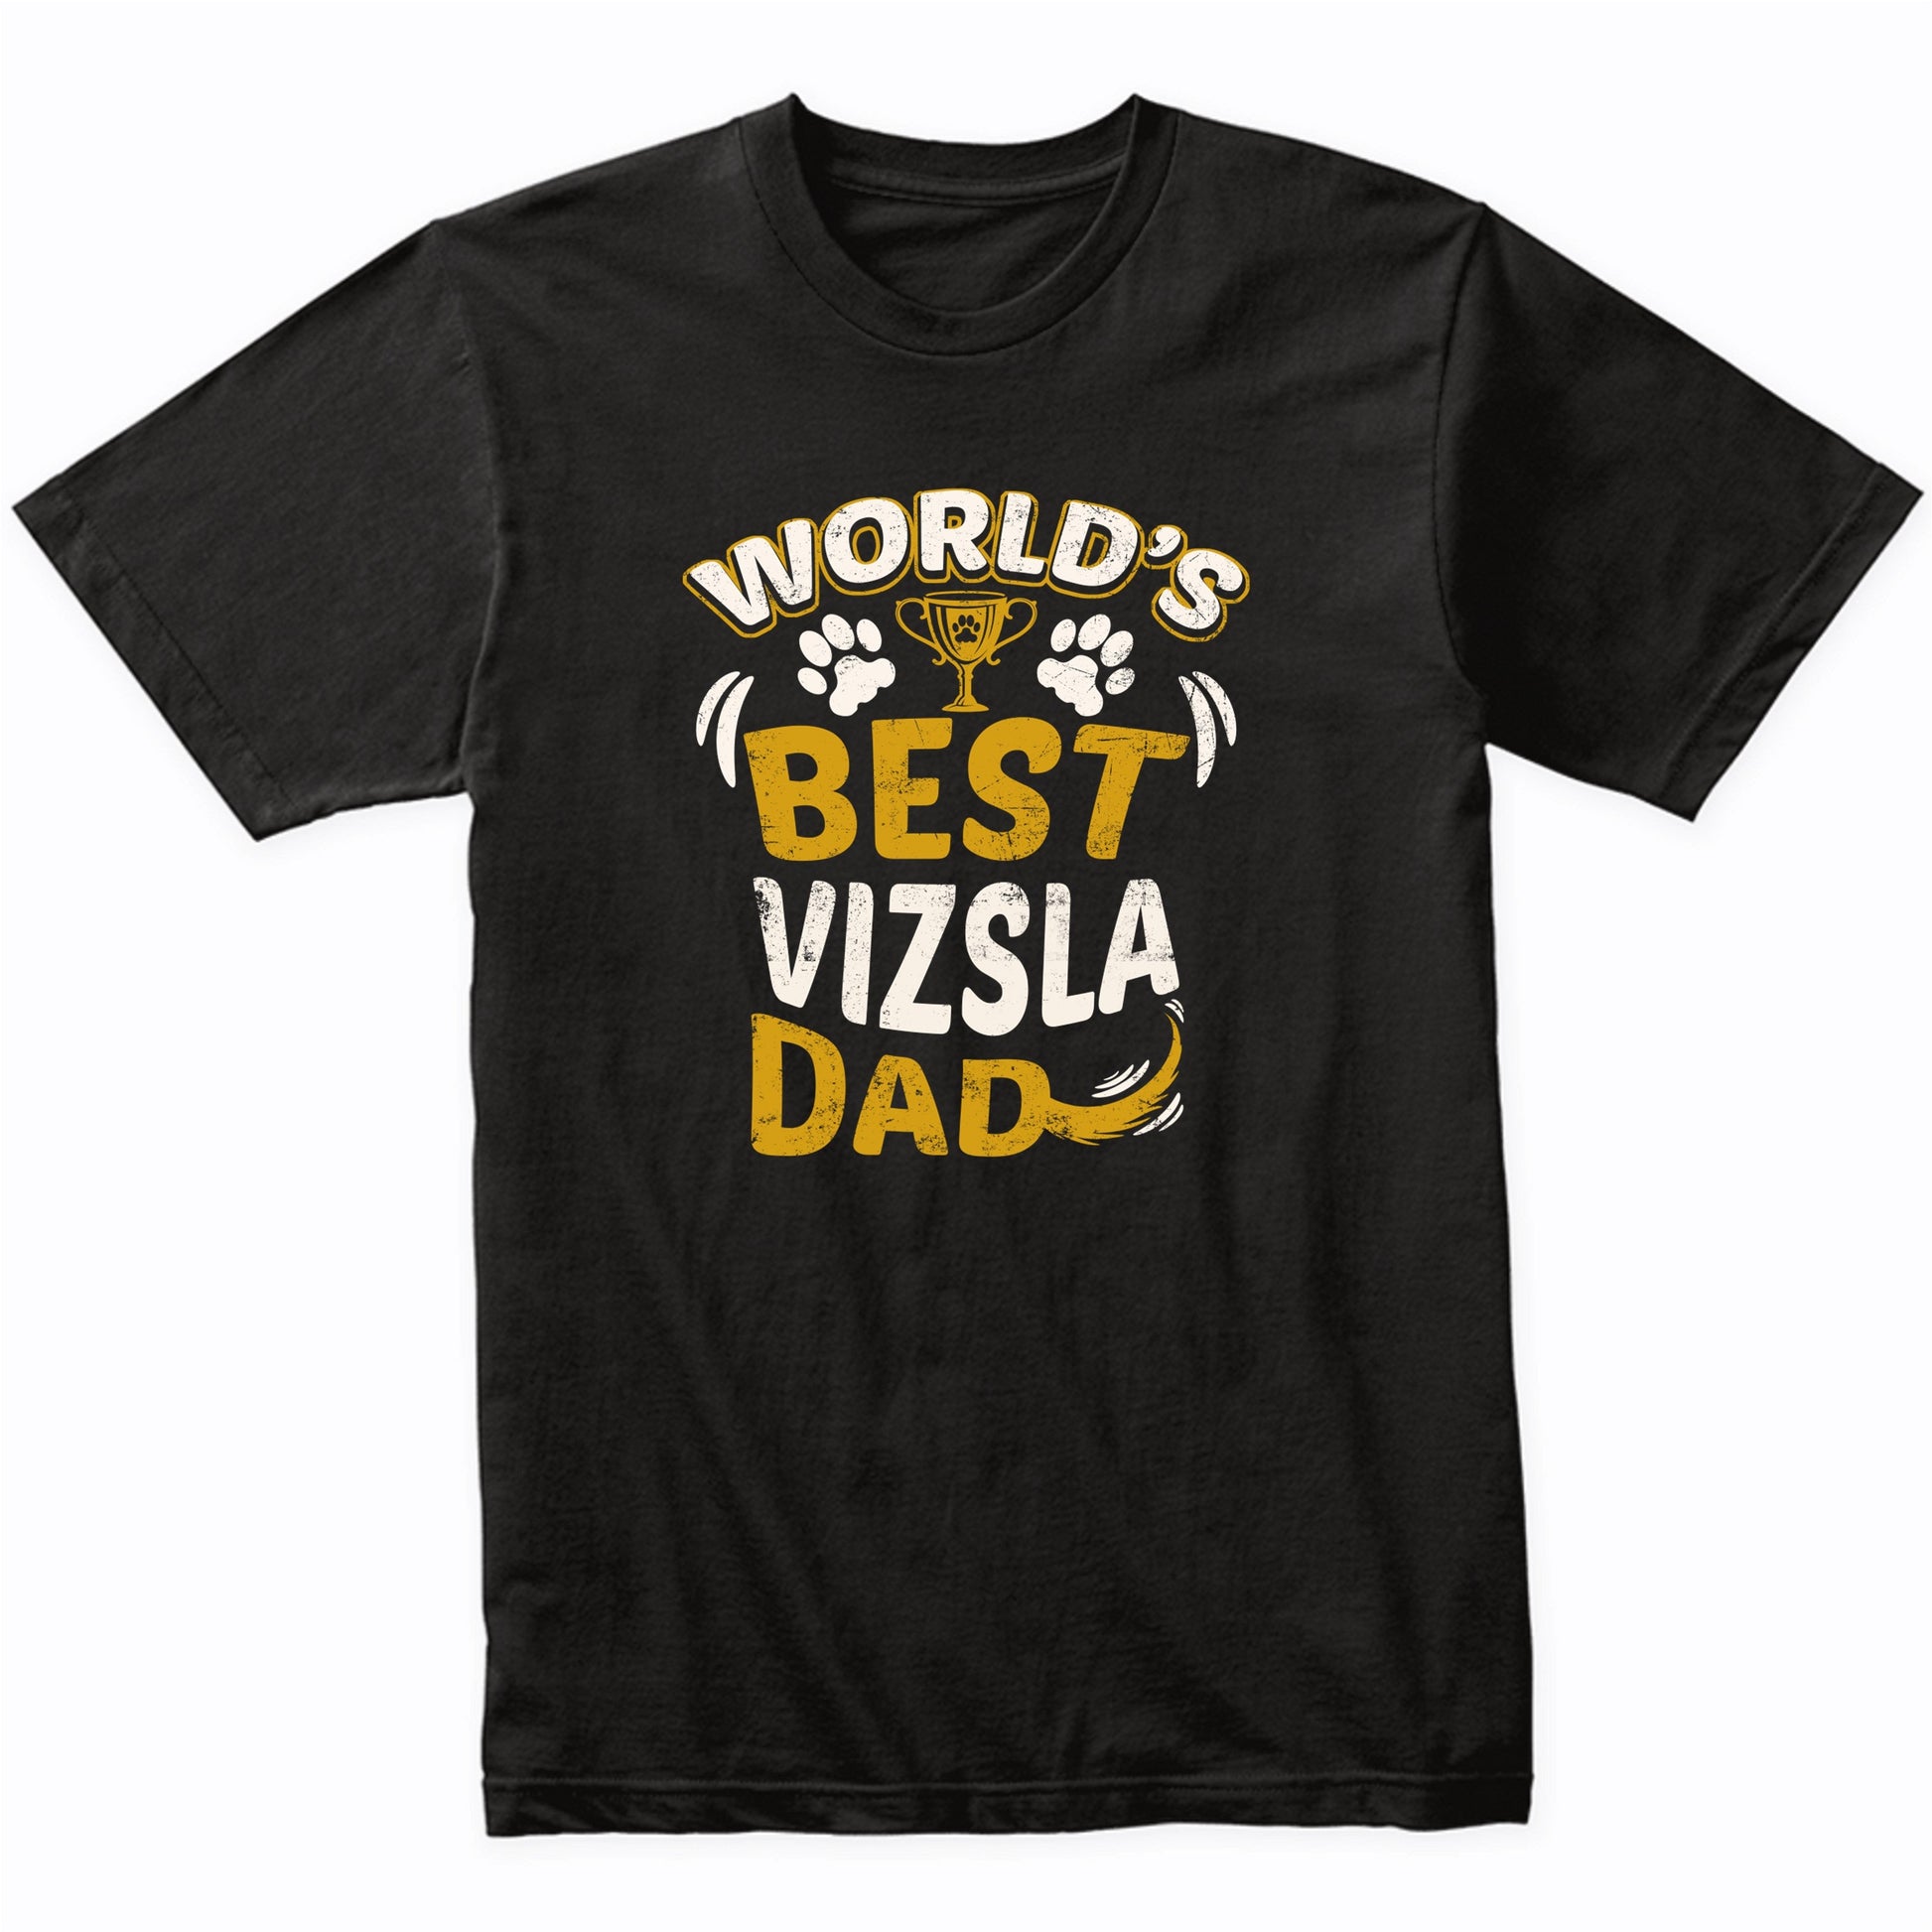 World's Best Vizsla Dad Graphic T-Shirt